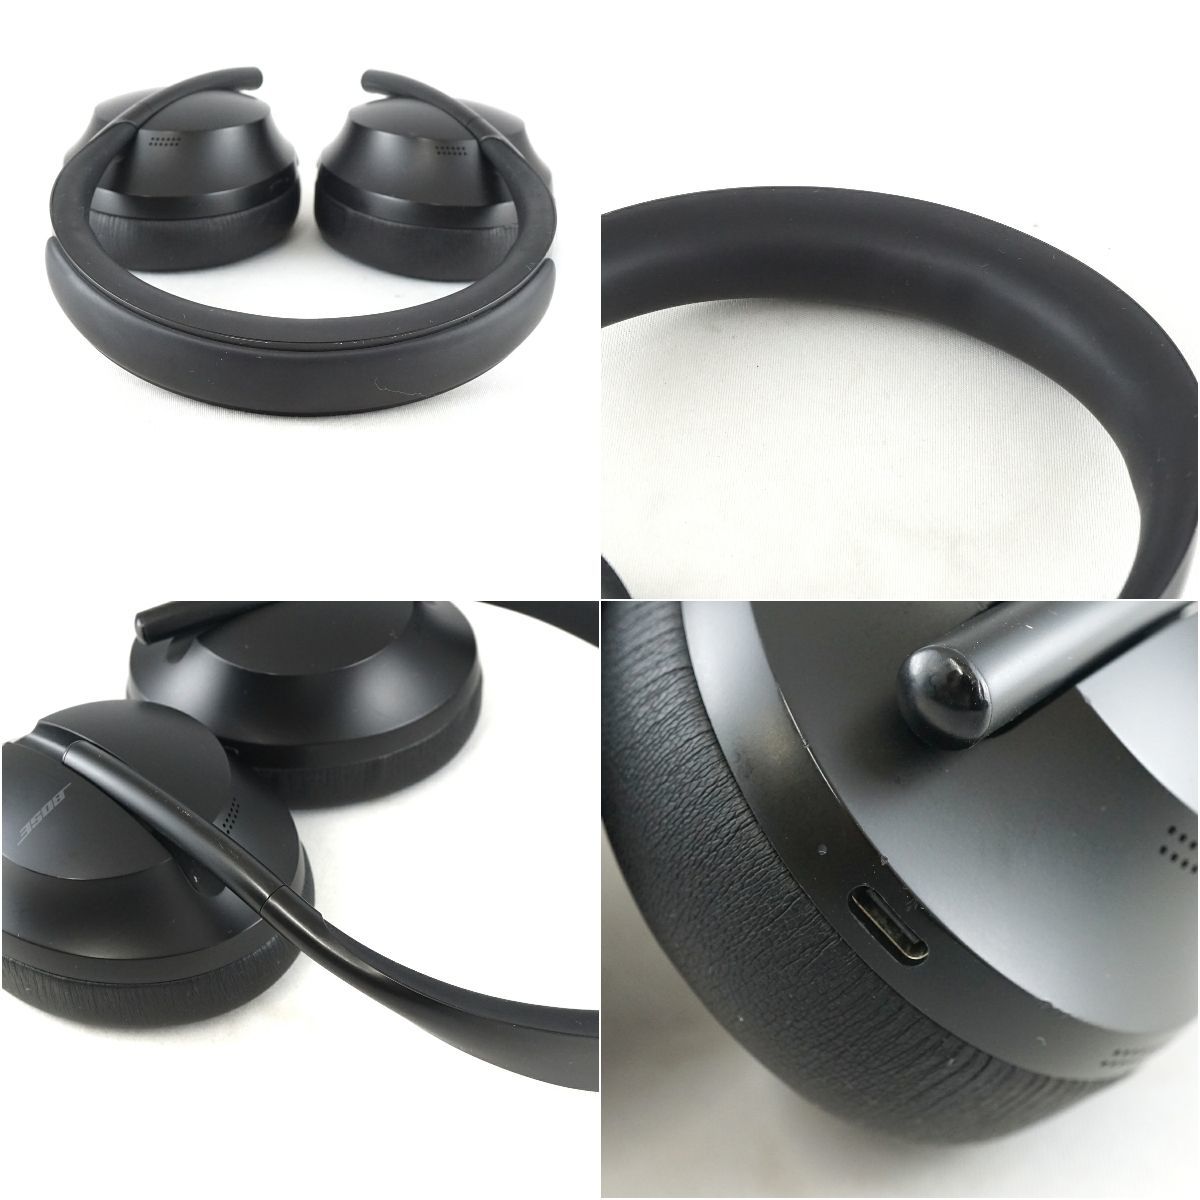 Bose Noise Cancelling Headphones 700 беспроводной наушники USED прекрасный товар ушные накладки новый товар NC700 шум отмена кольцо исправно работающий товар S V9581